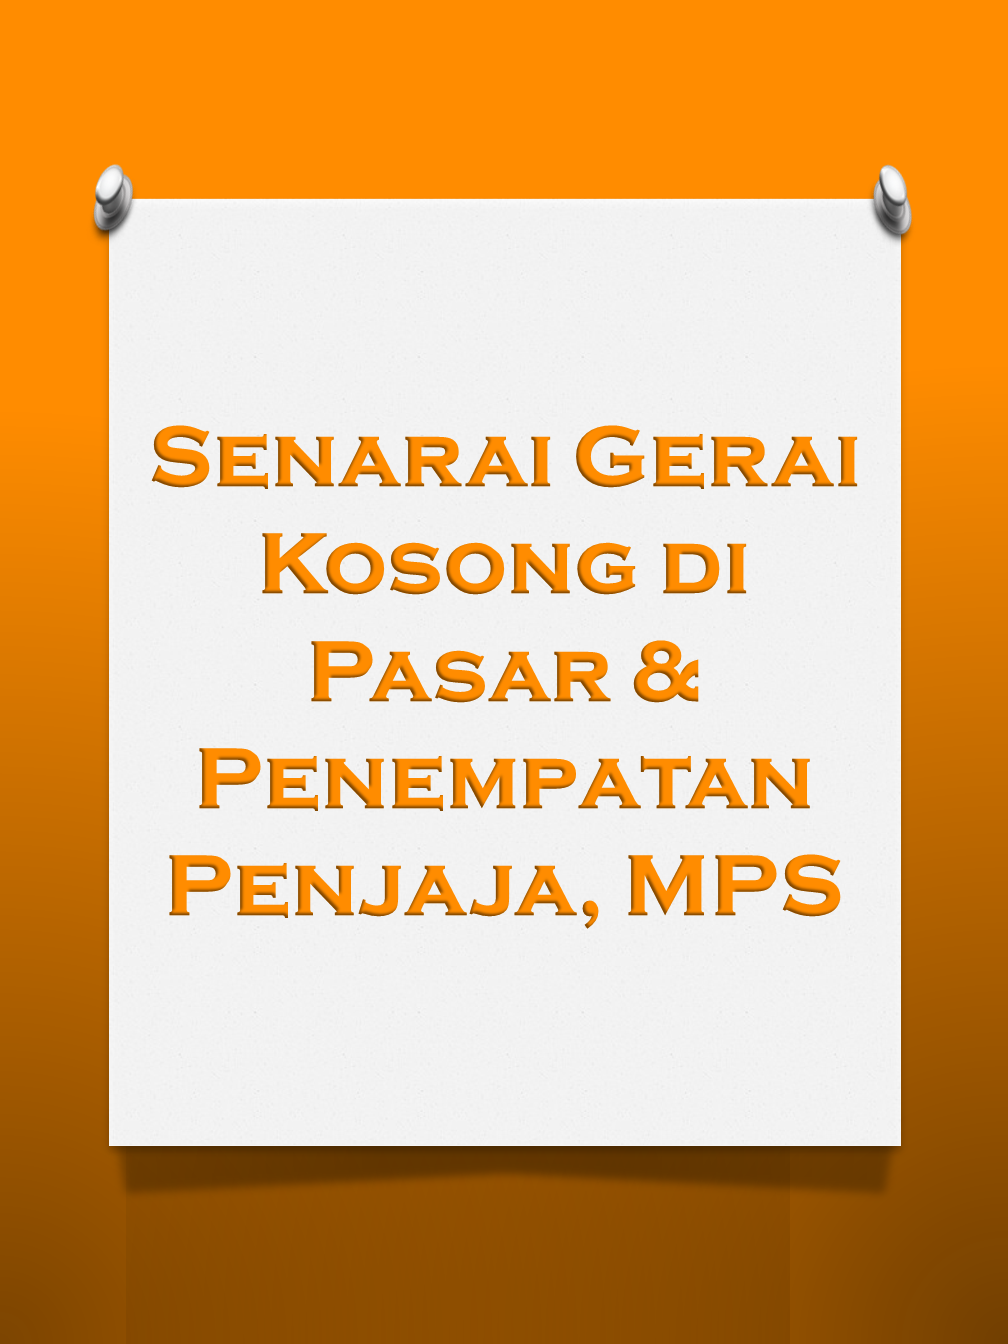 Senarai Gerai Kosong Di Pasar & Penempatan Penjaja, MPS